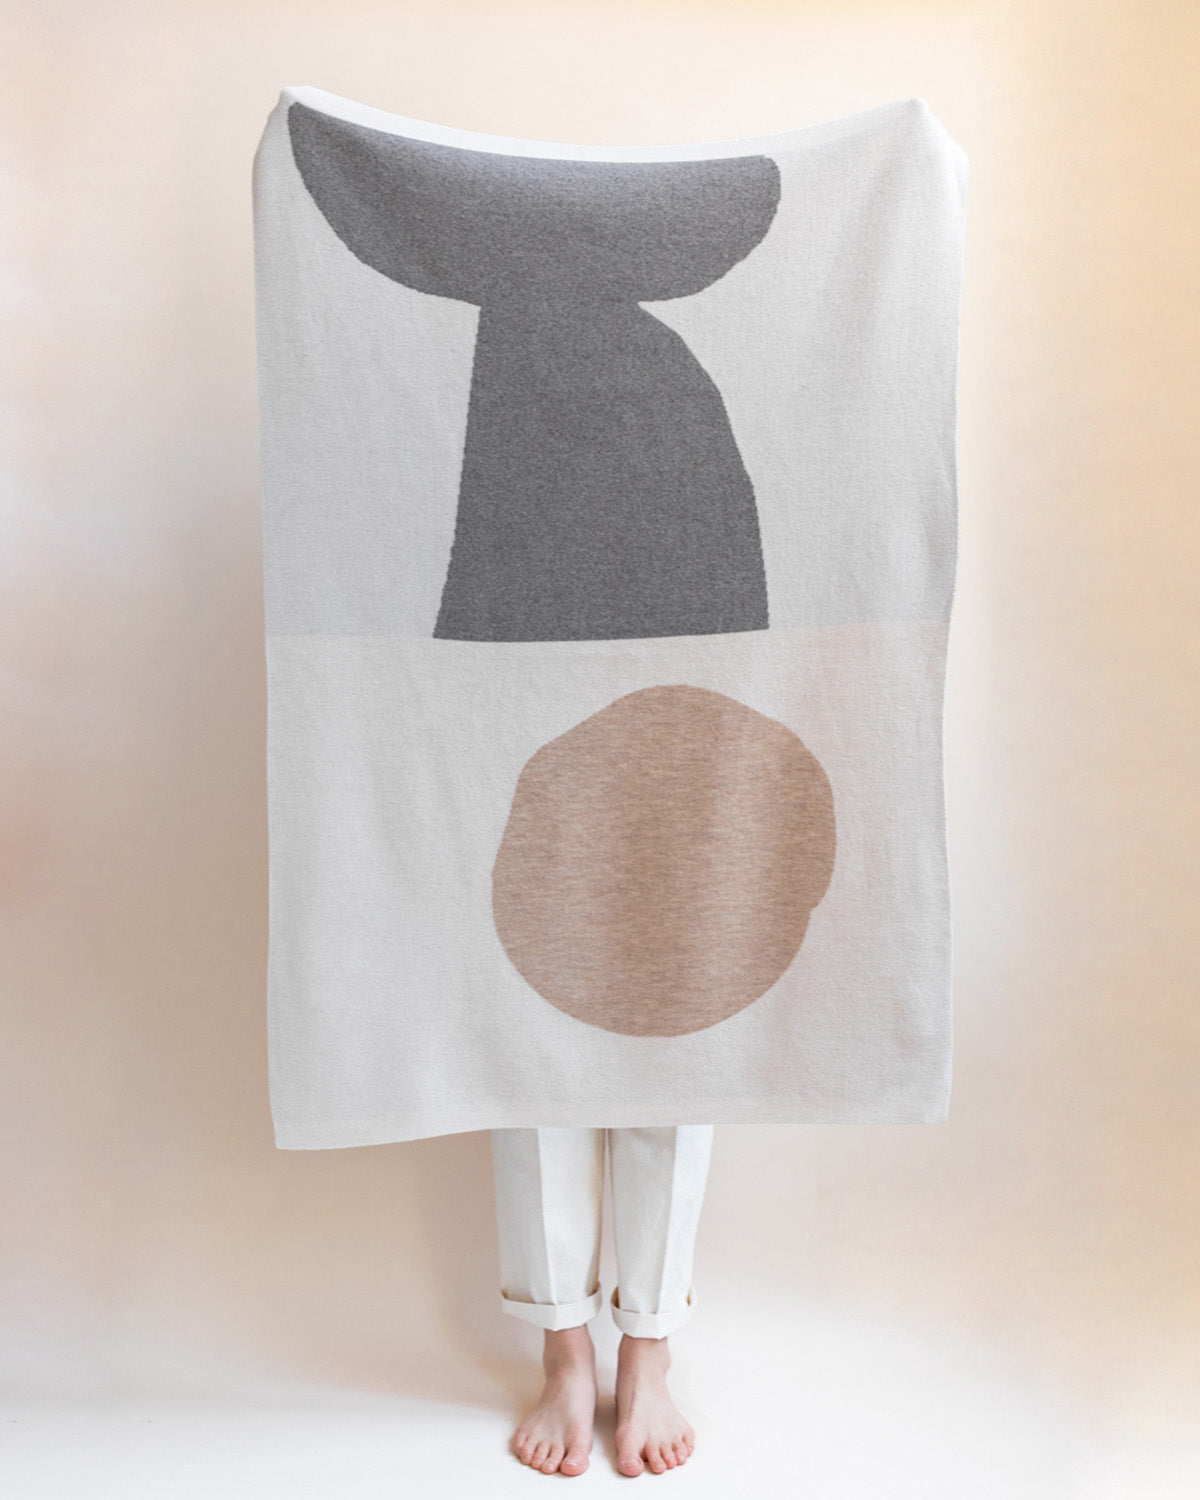 Hvid - baby blanket made of merino wool "Folie" | otter/sand